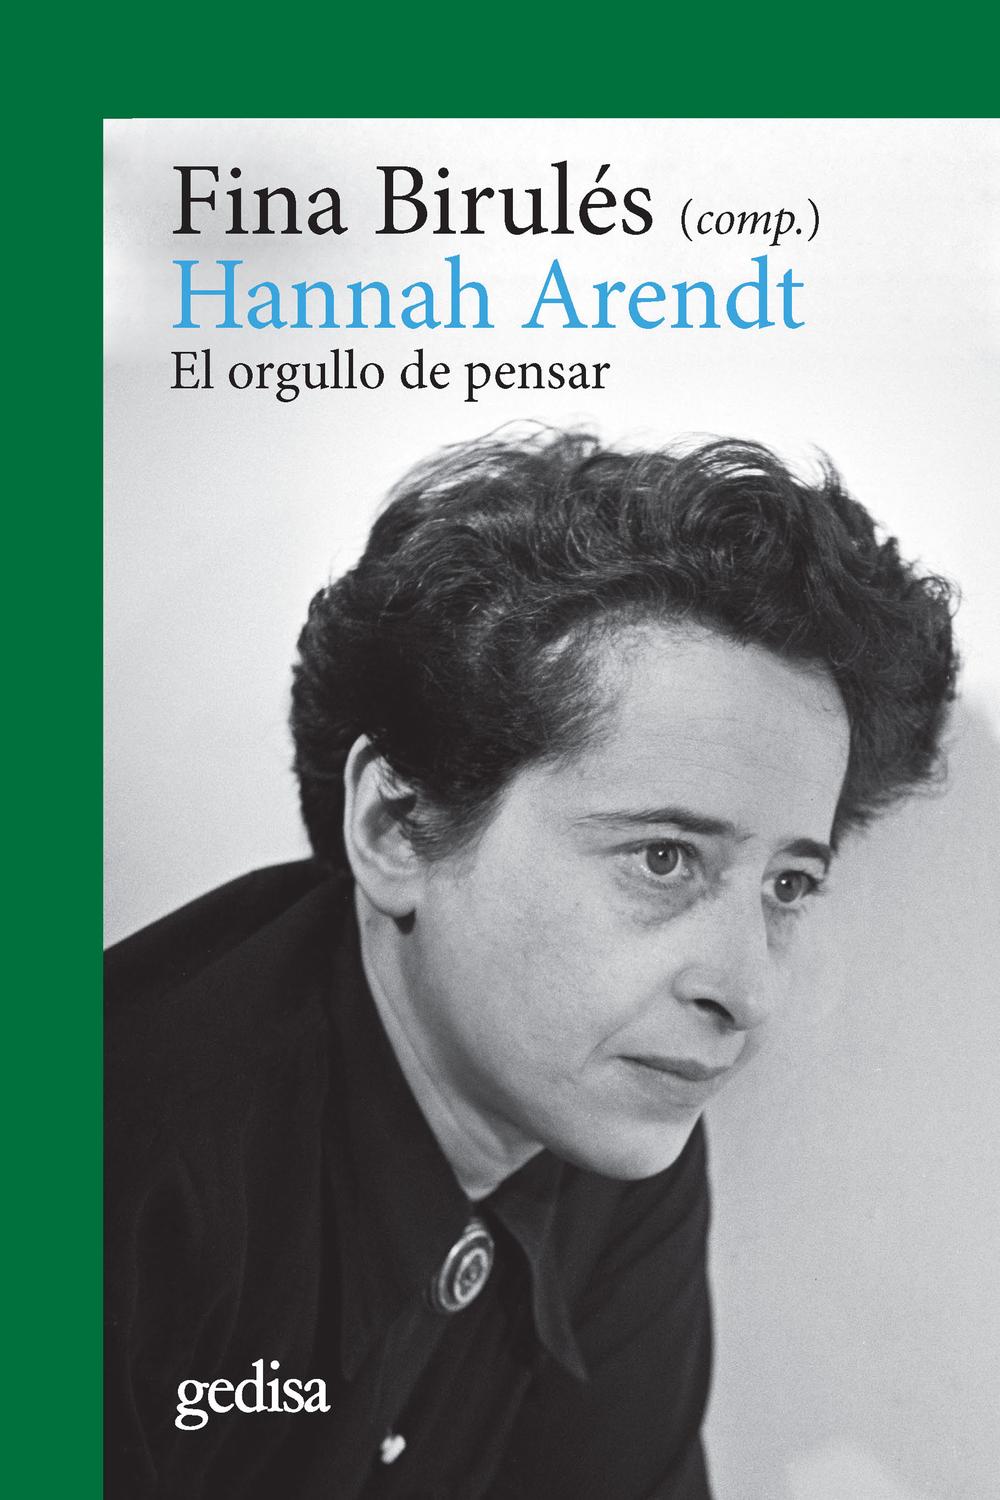 Hannah Arendt - Fina Birulés